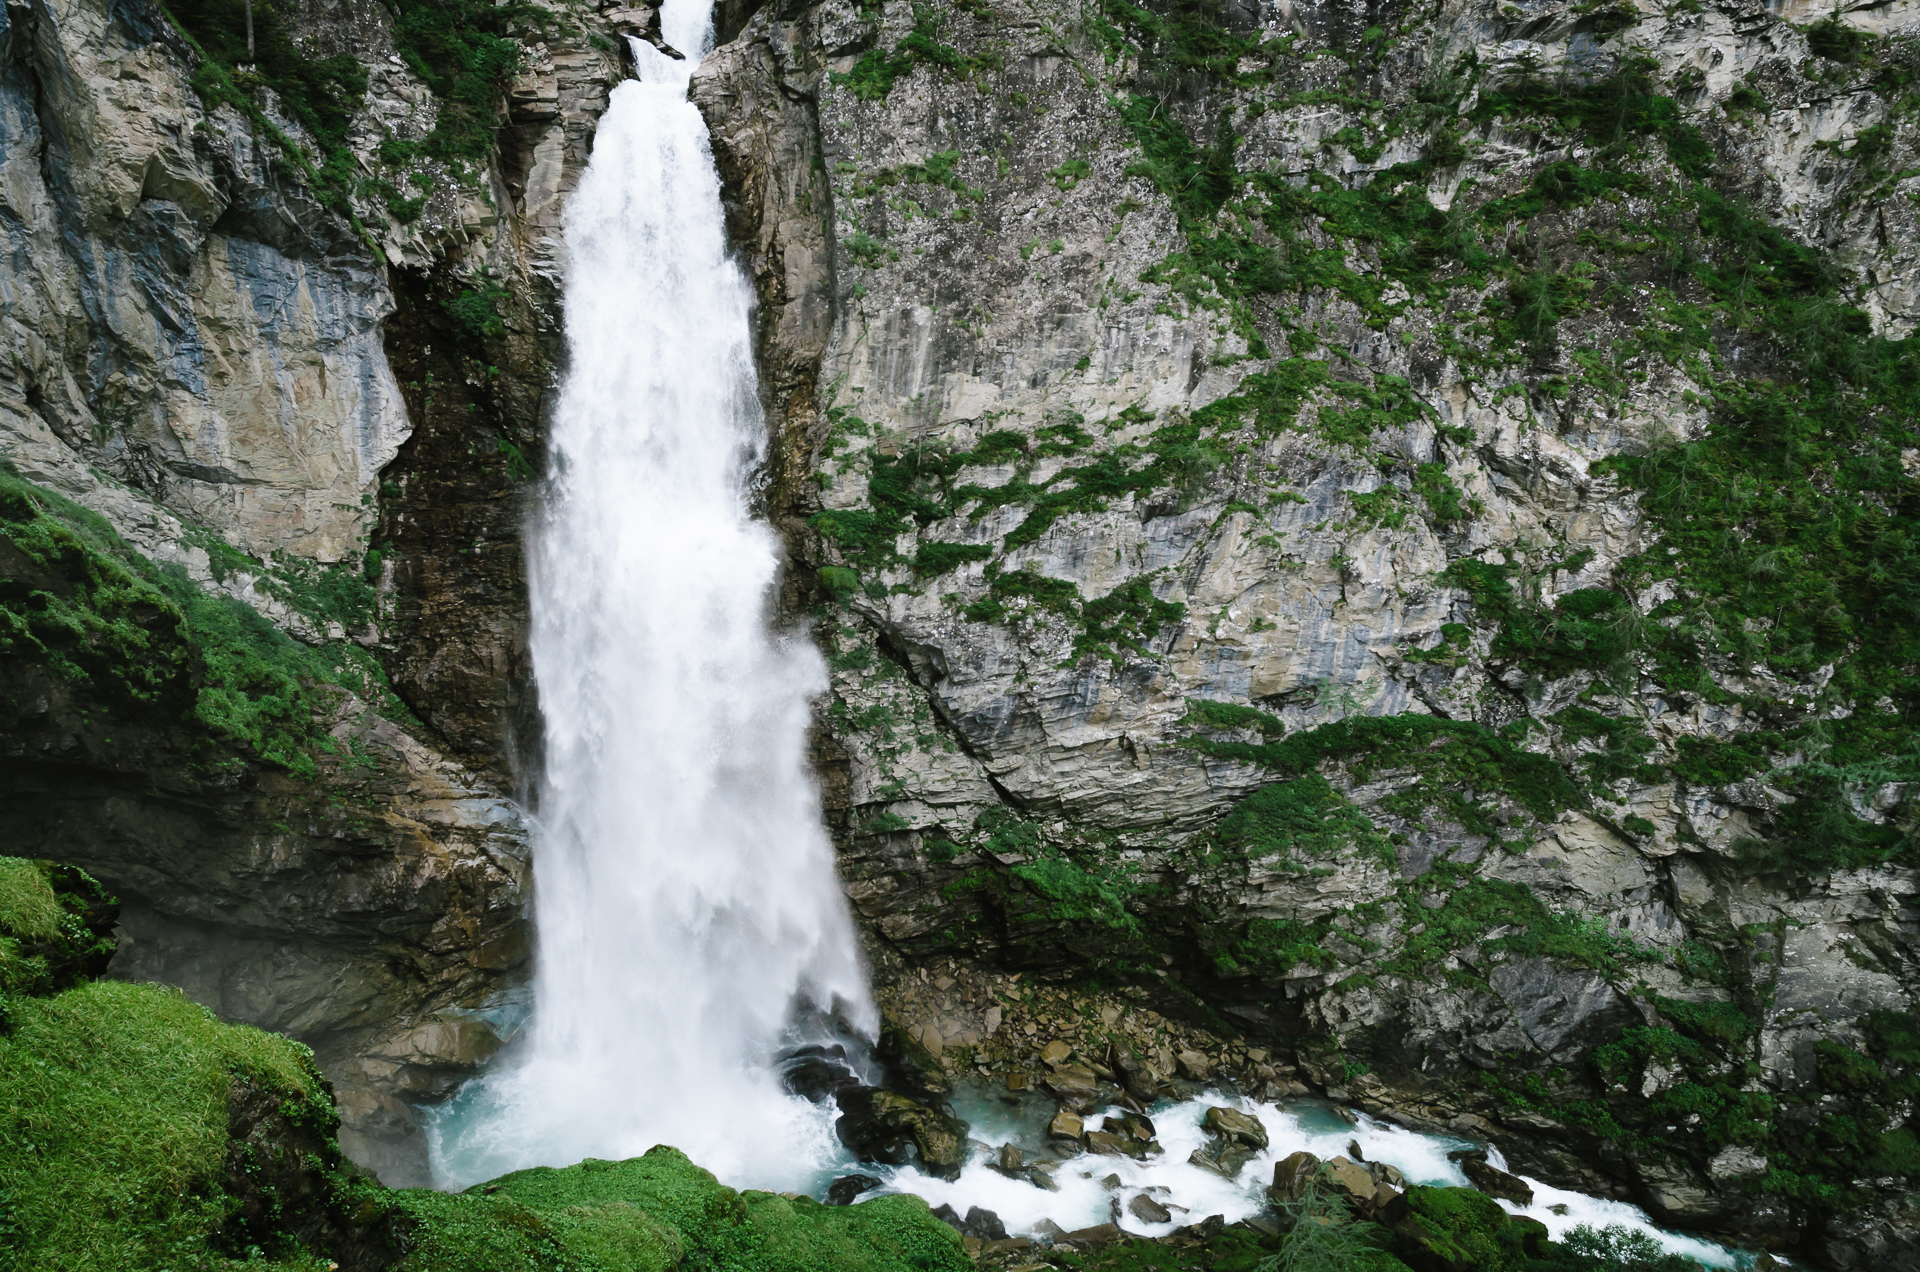 The Gossnitz Waterfall in Heiligenblut, Austria